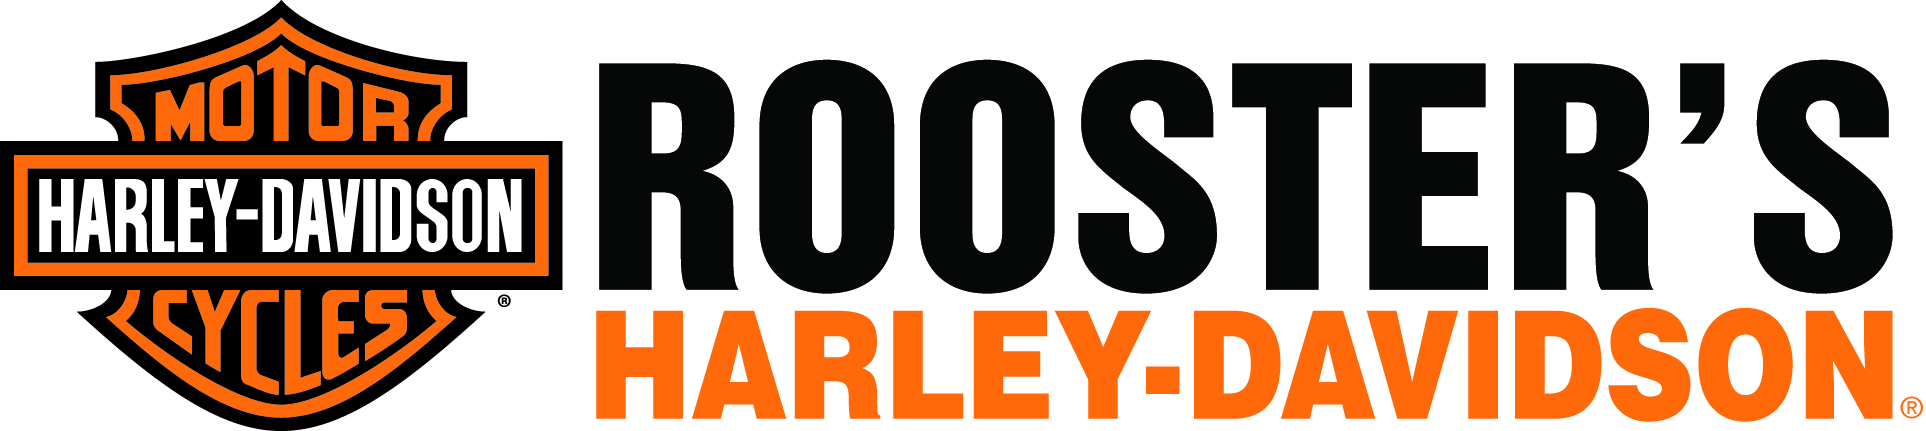 Rooster's Harley Davidson